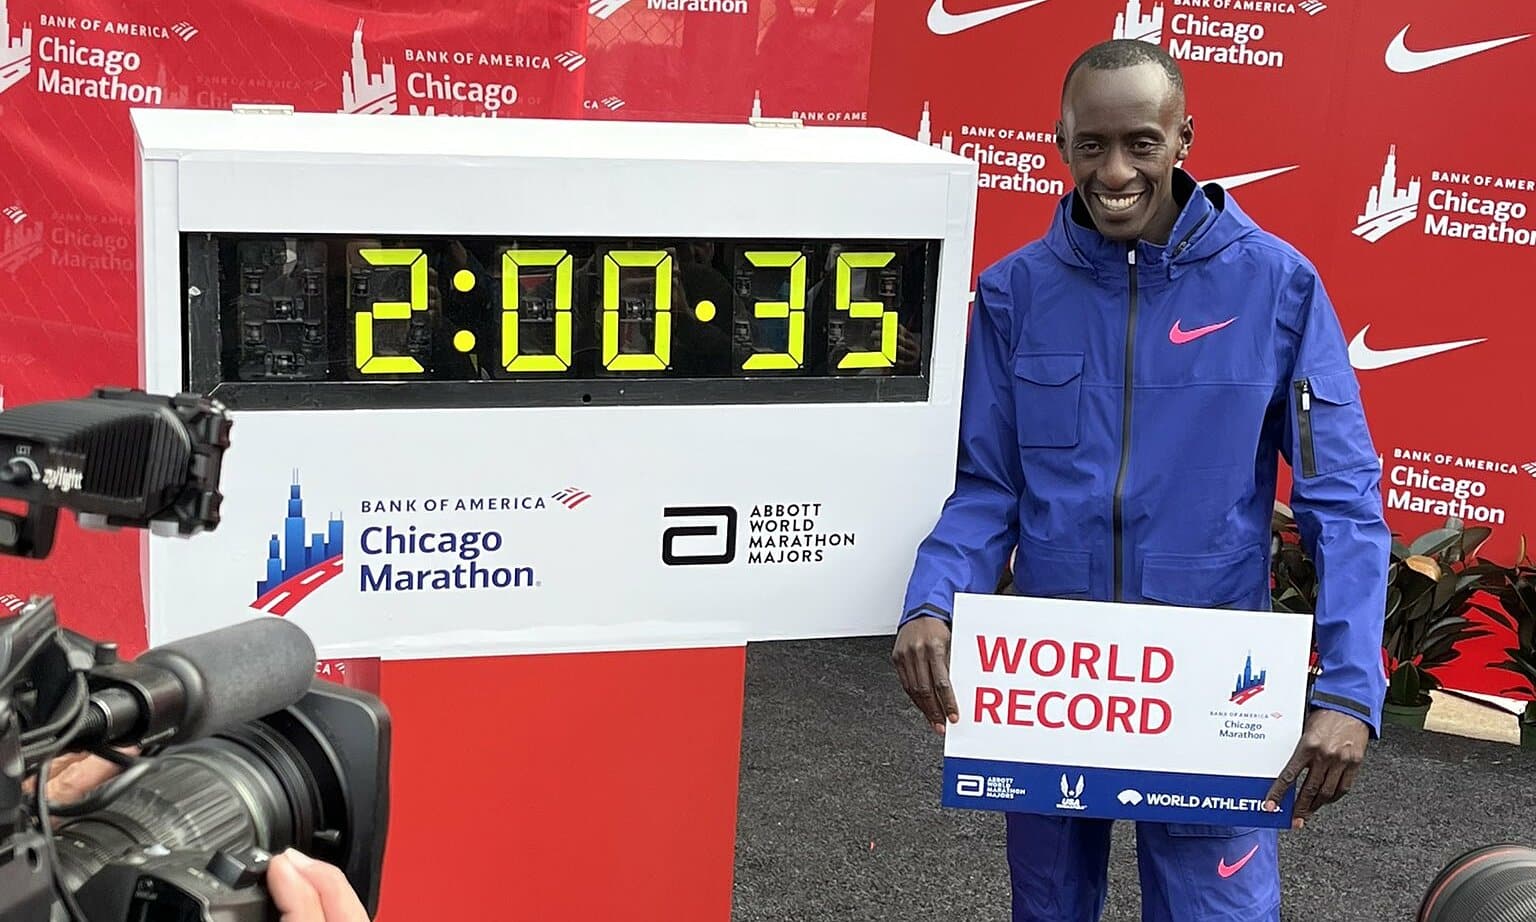 Kiptum chụp ảnh với bảng kỷ lục thế giới cùng thành tích 2 giờ 0 phút 35 giây tại Chicago Marathon ngày 8/10. Ảnh: Chicago Marathon